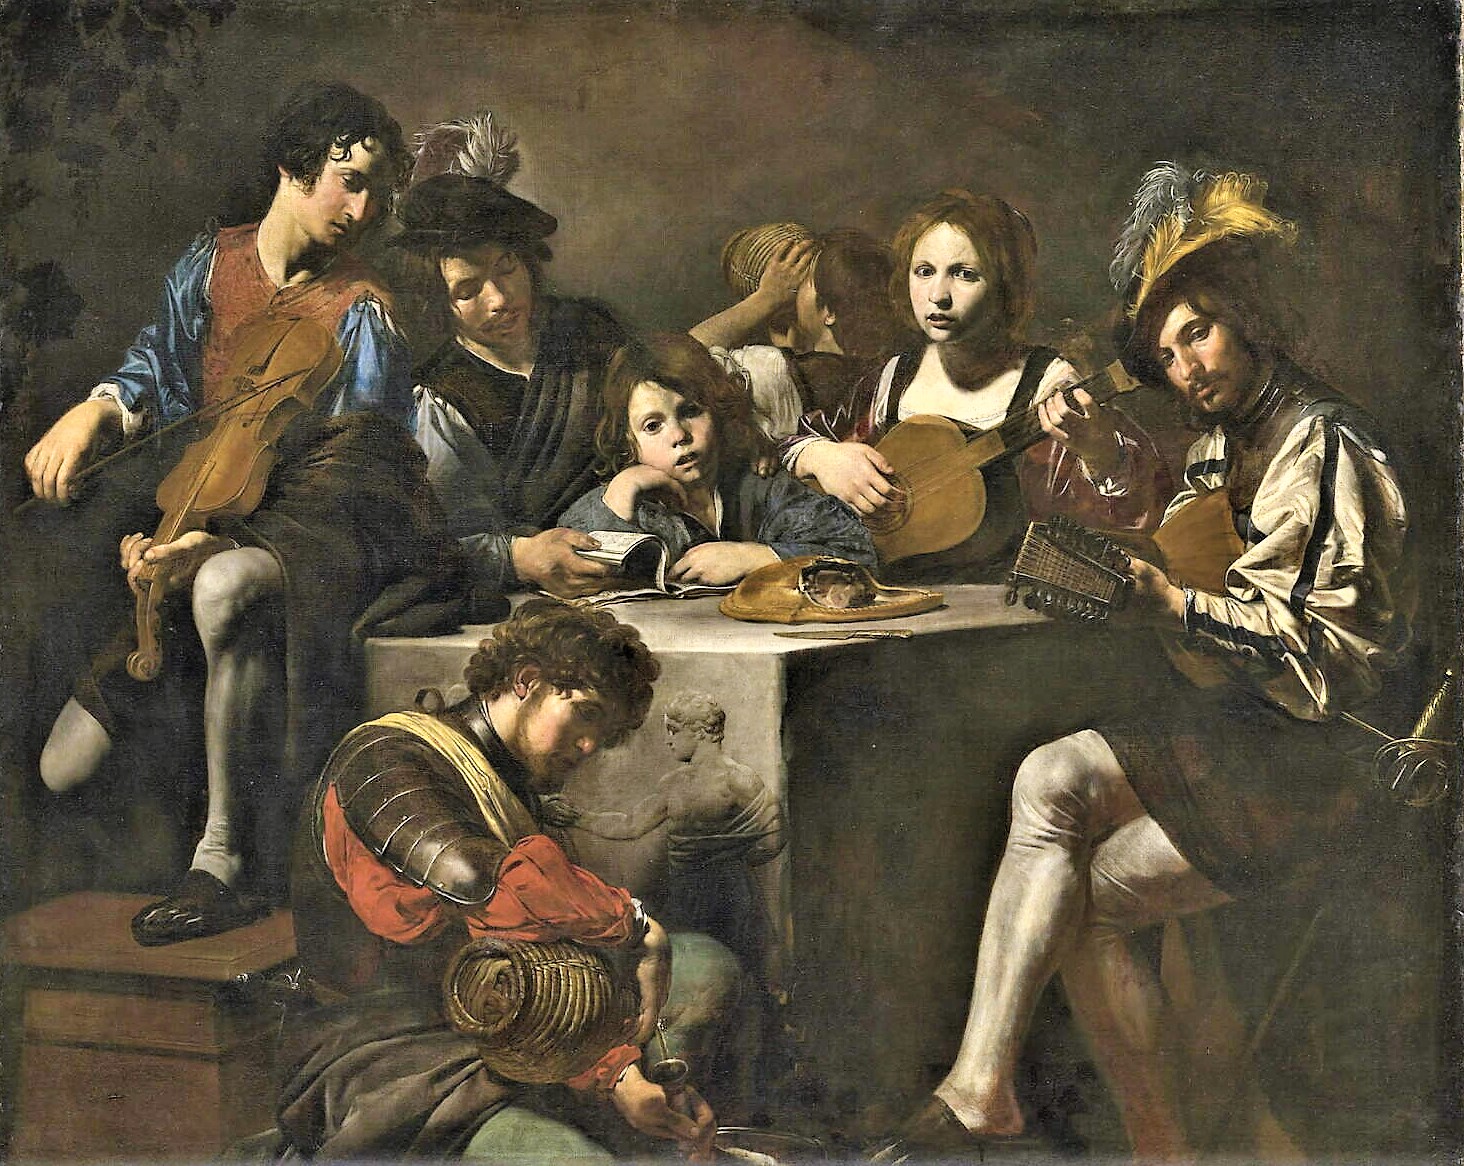 1624-26-Valentin-de-boulogne-Le-concert-au-bas-relief-louvre